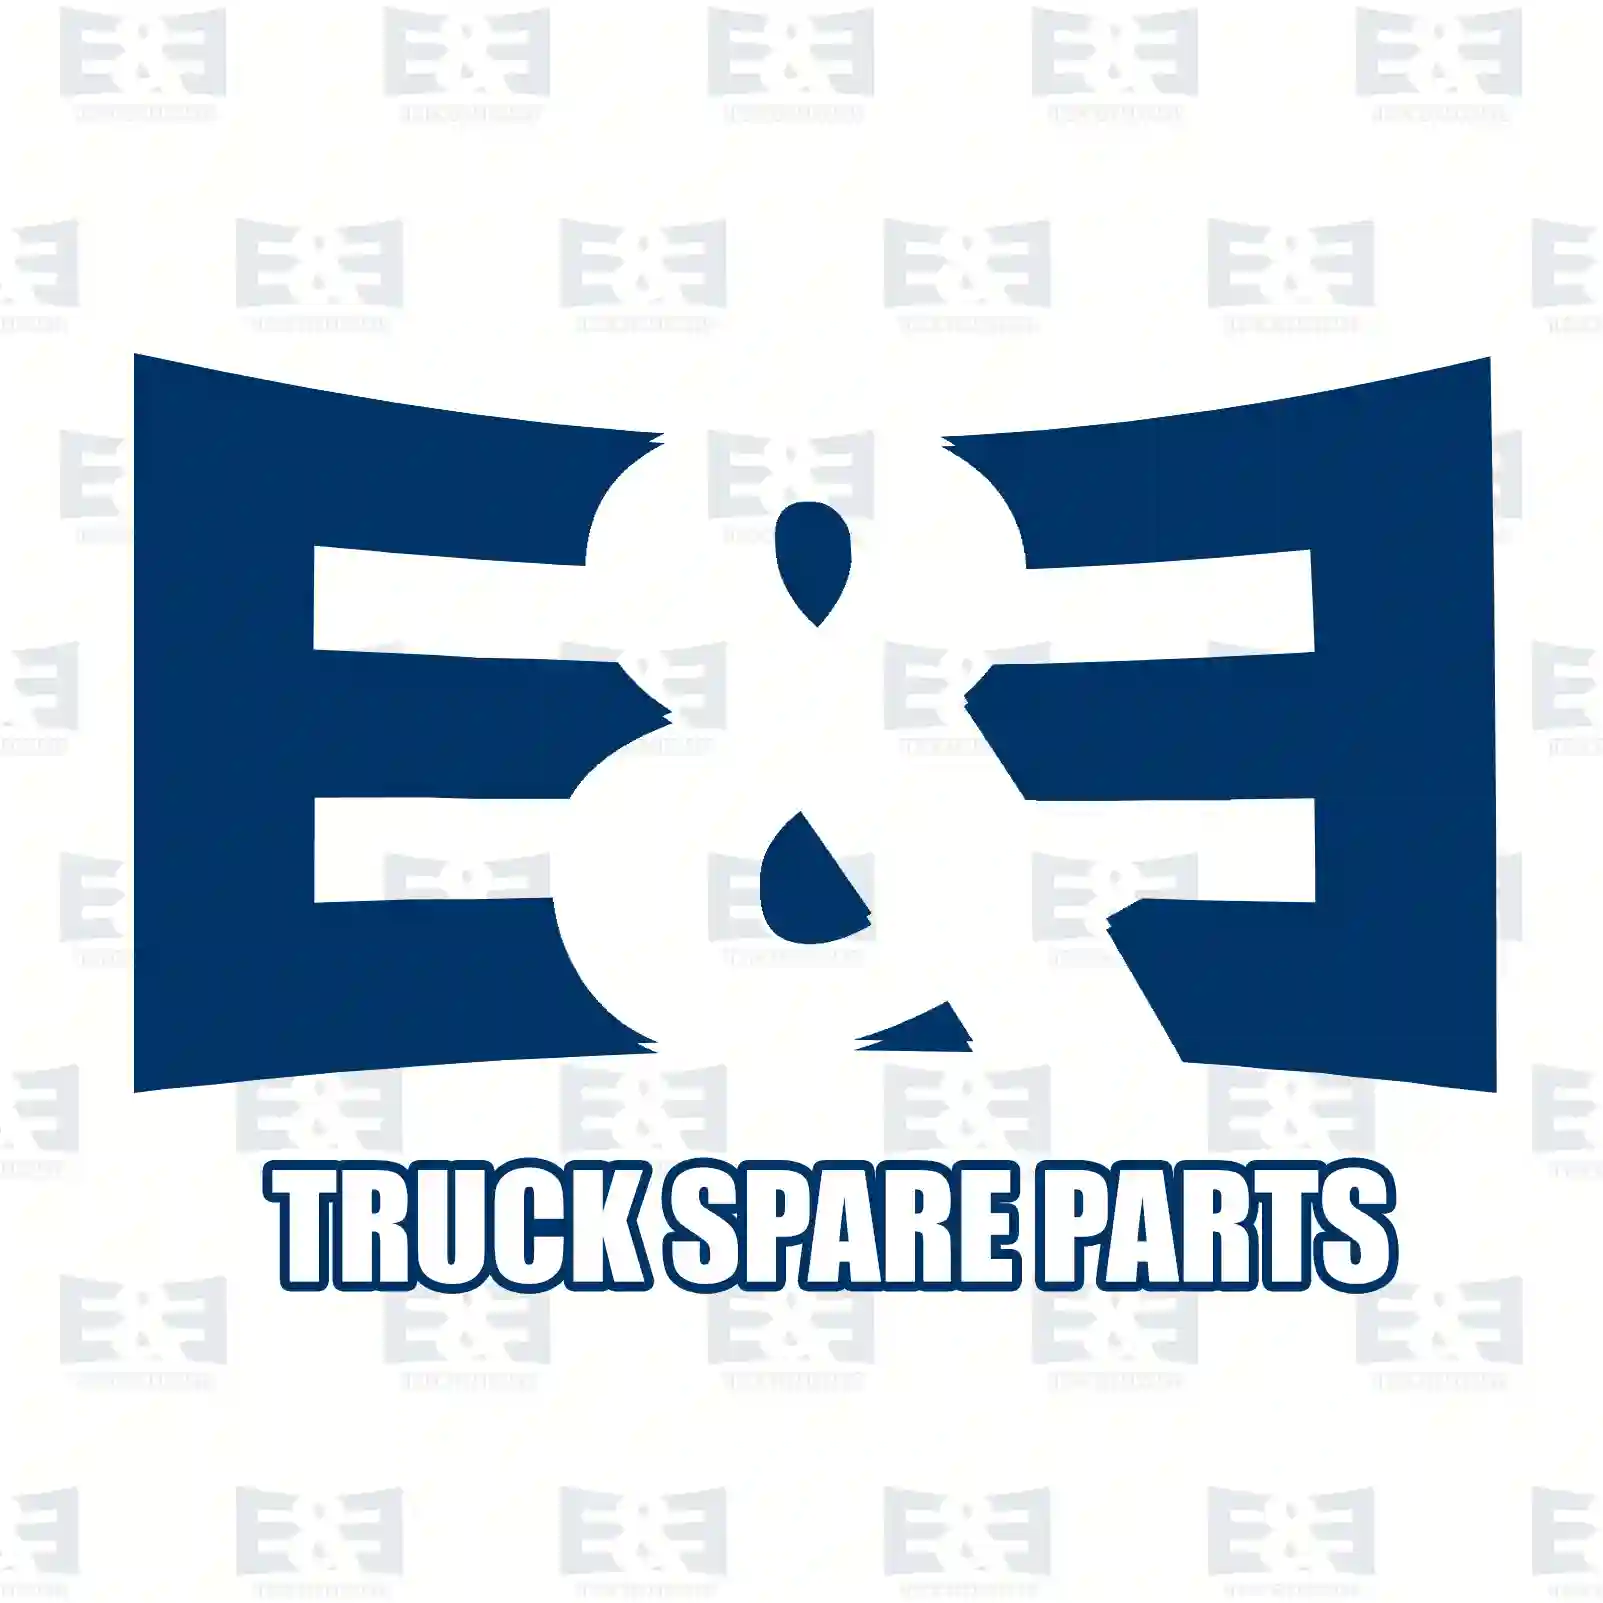 Oil cooler, 2E2208767, 2711880401 ||  2E2208767 E&E Truck Spare Parts | Truck Spare Parts, Auotomotive Spare Parts Oil cooler, 2E2208767, 2711880401 ||  2E2208767 E&E Truck Spare Parts | Truck Spare Parts, Auotomotive Spare Parts